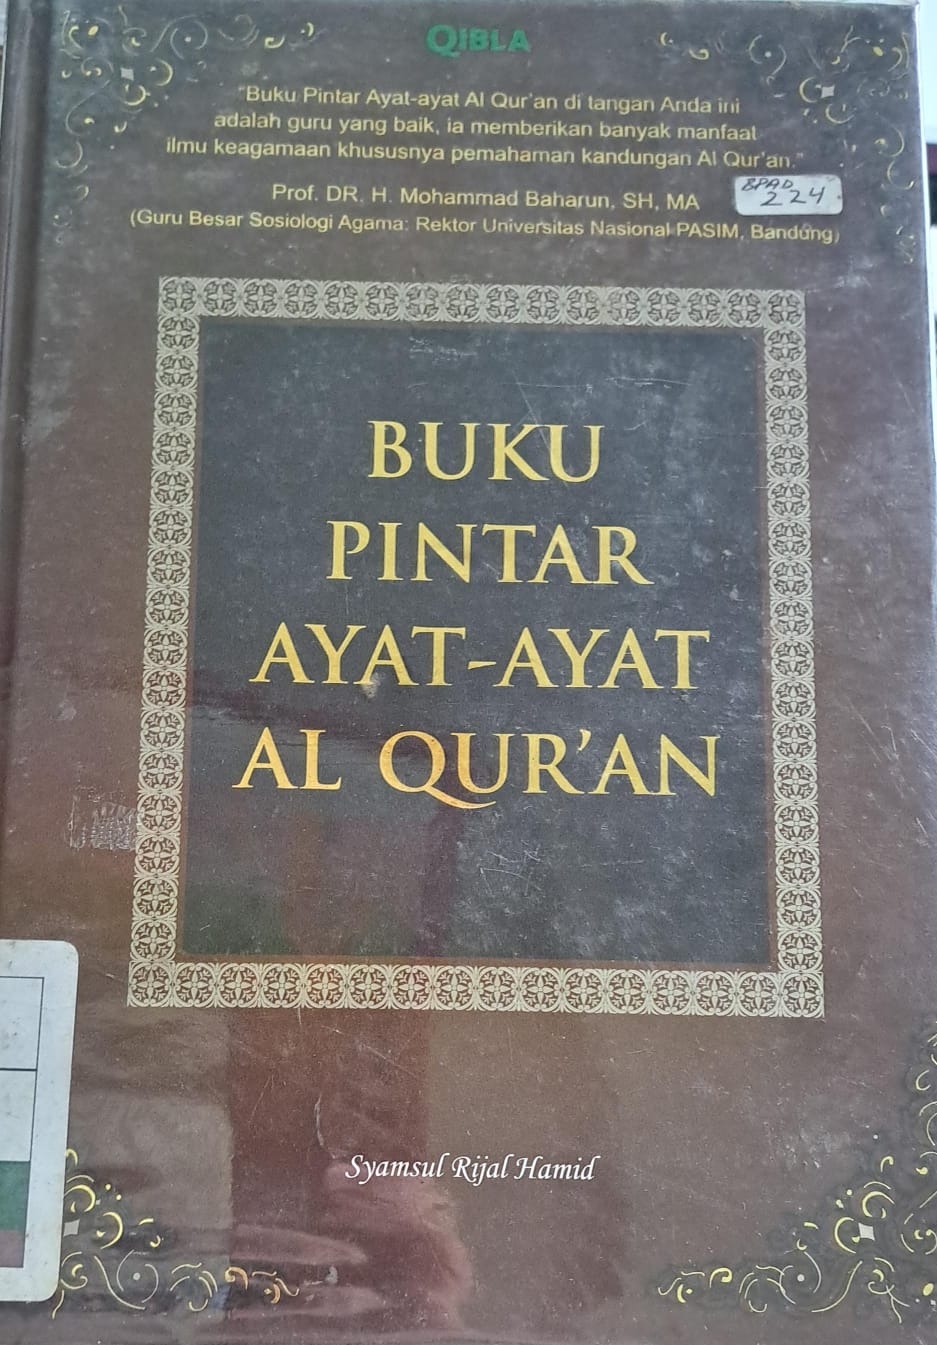 Buku pintar ayat-ayat al qur'an